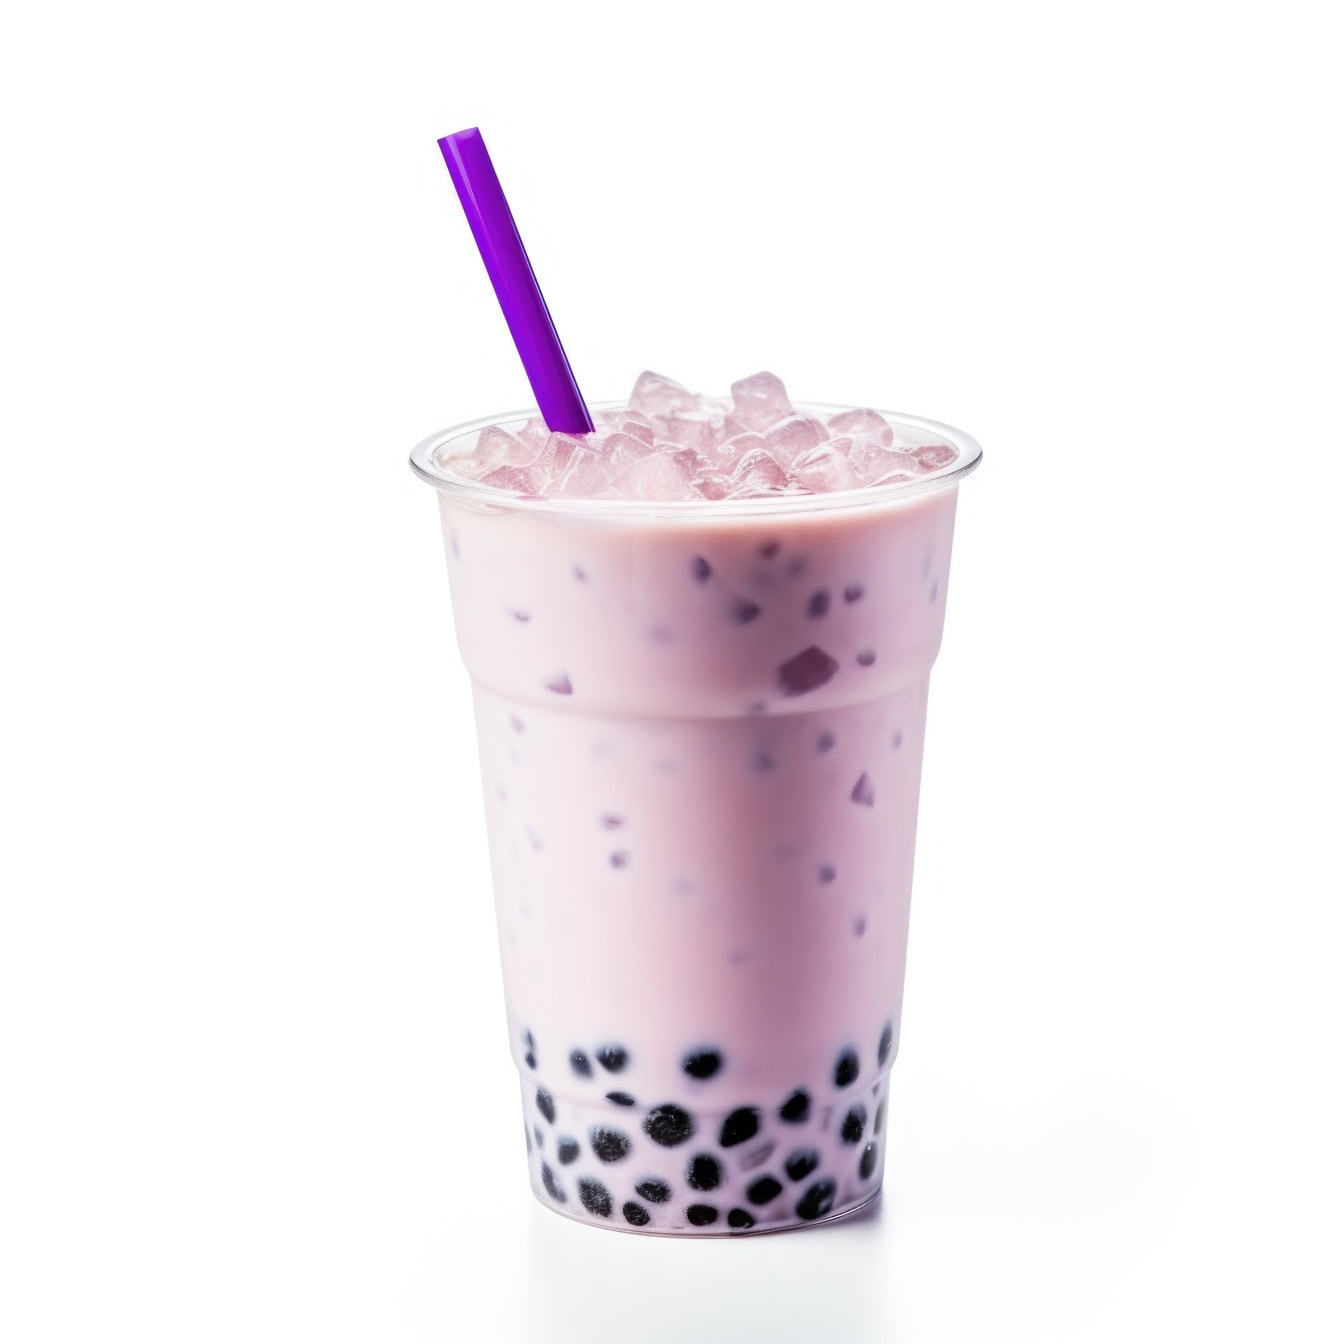 O ceașcă de plastic de ceai proaspăt cu lapte rece, aromă Taro cu vanilie dulce și gheață și un pai de băut violet